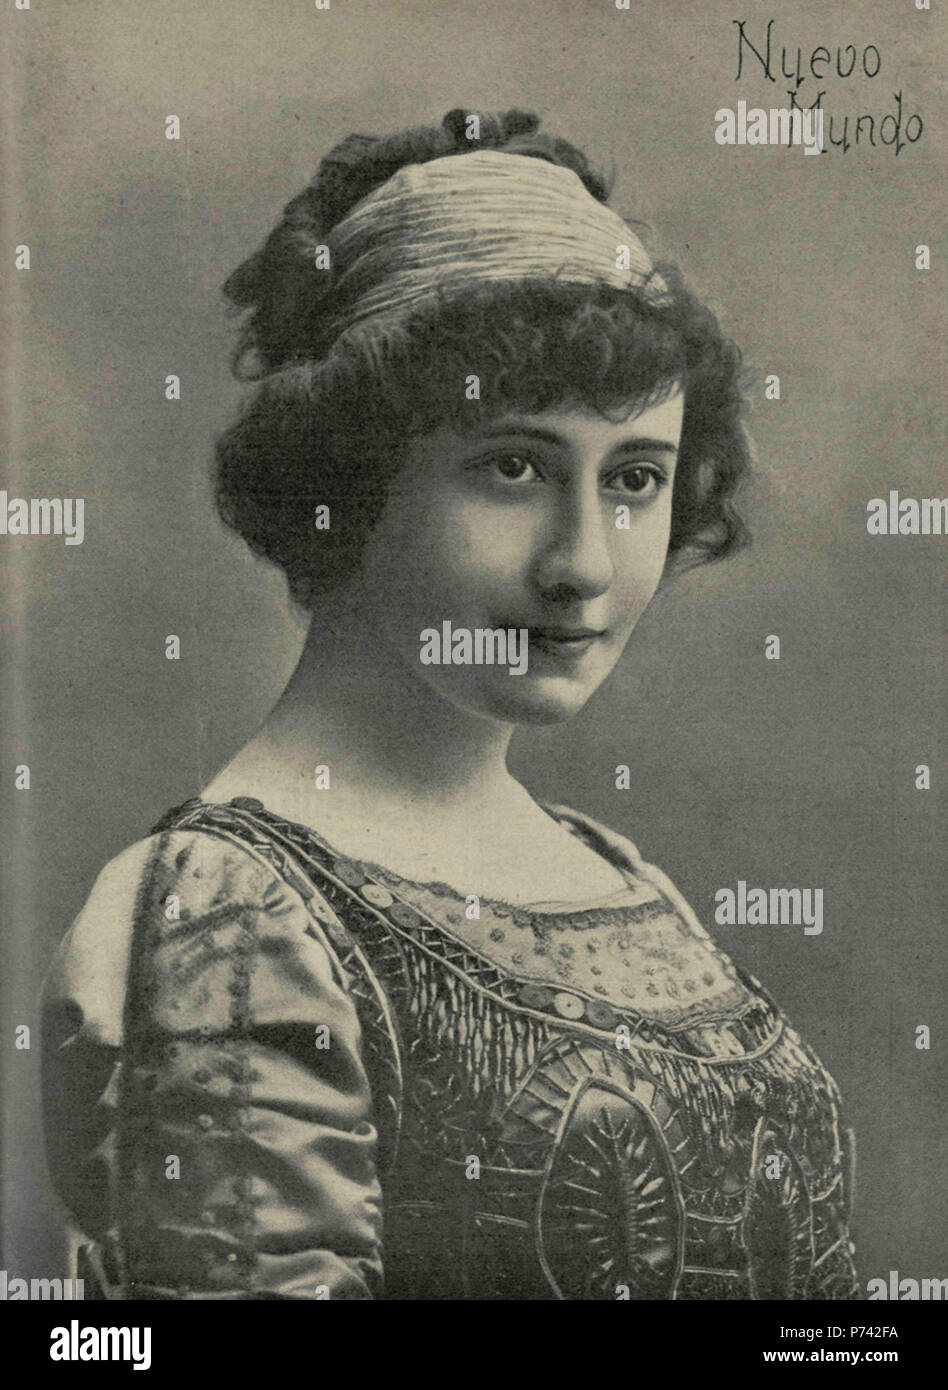 Español: Adela Carbone, bella actriz del Teatro de la Comedia. 8 September 1910 2 1910-09-08, Nuevo Mundo, Adela Carbone, Calvache (cropped) Stock Photo